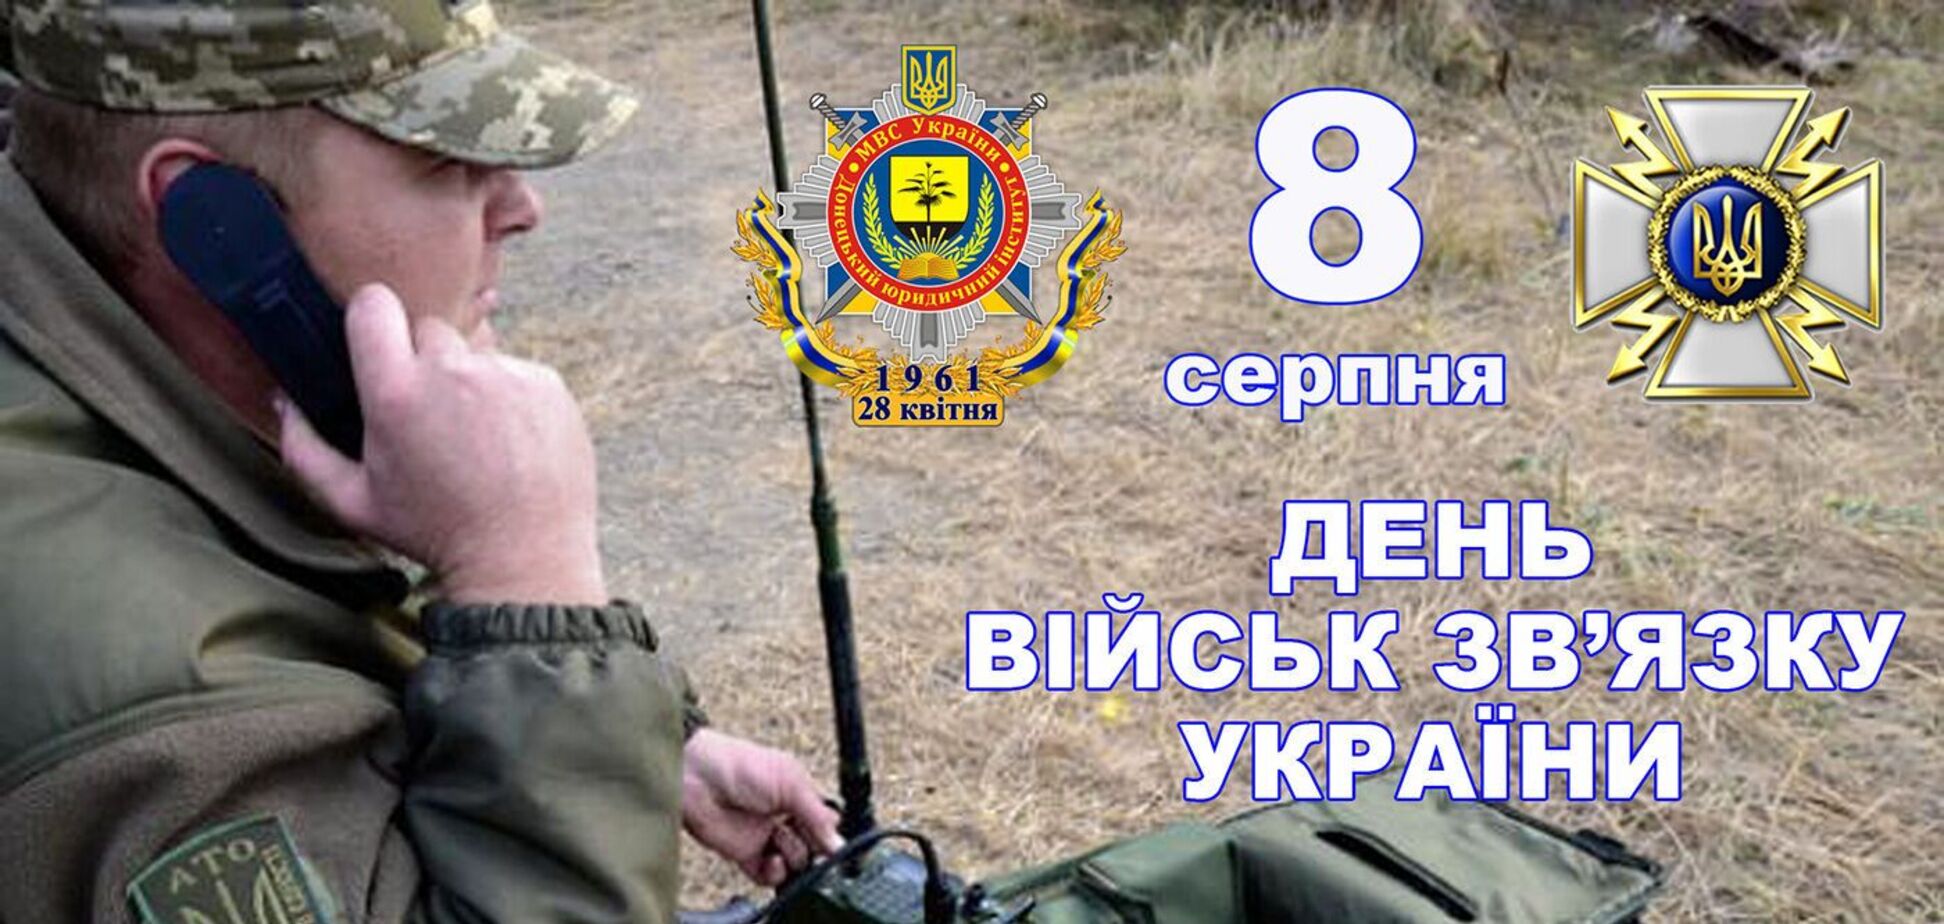 День войск связи ВСУ отмечается 8 августа